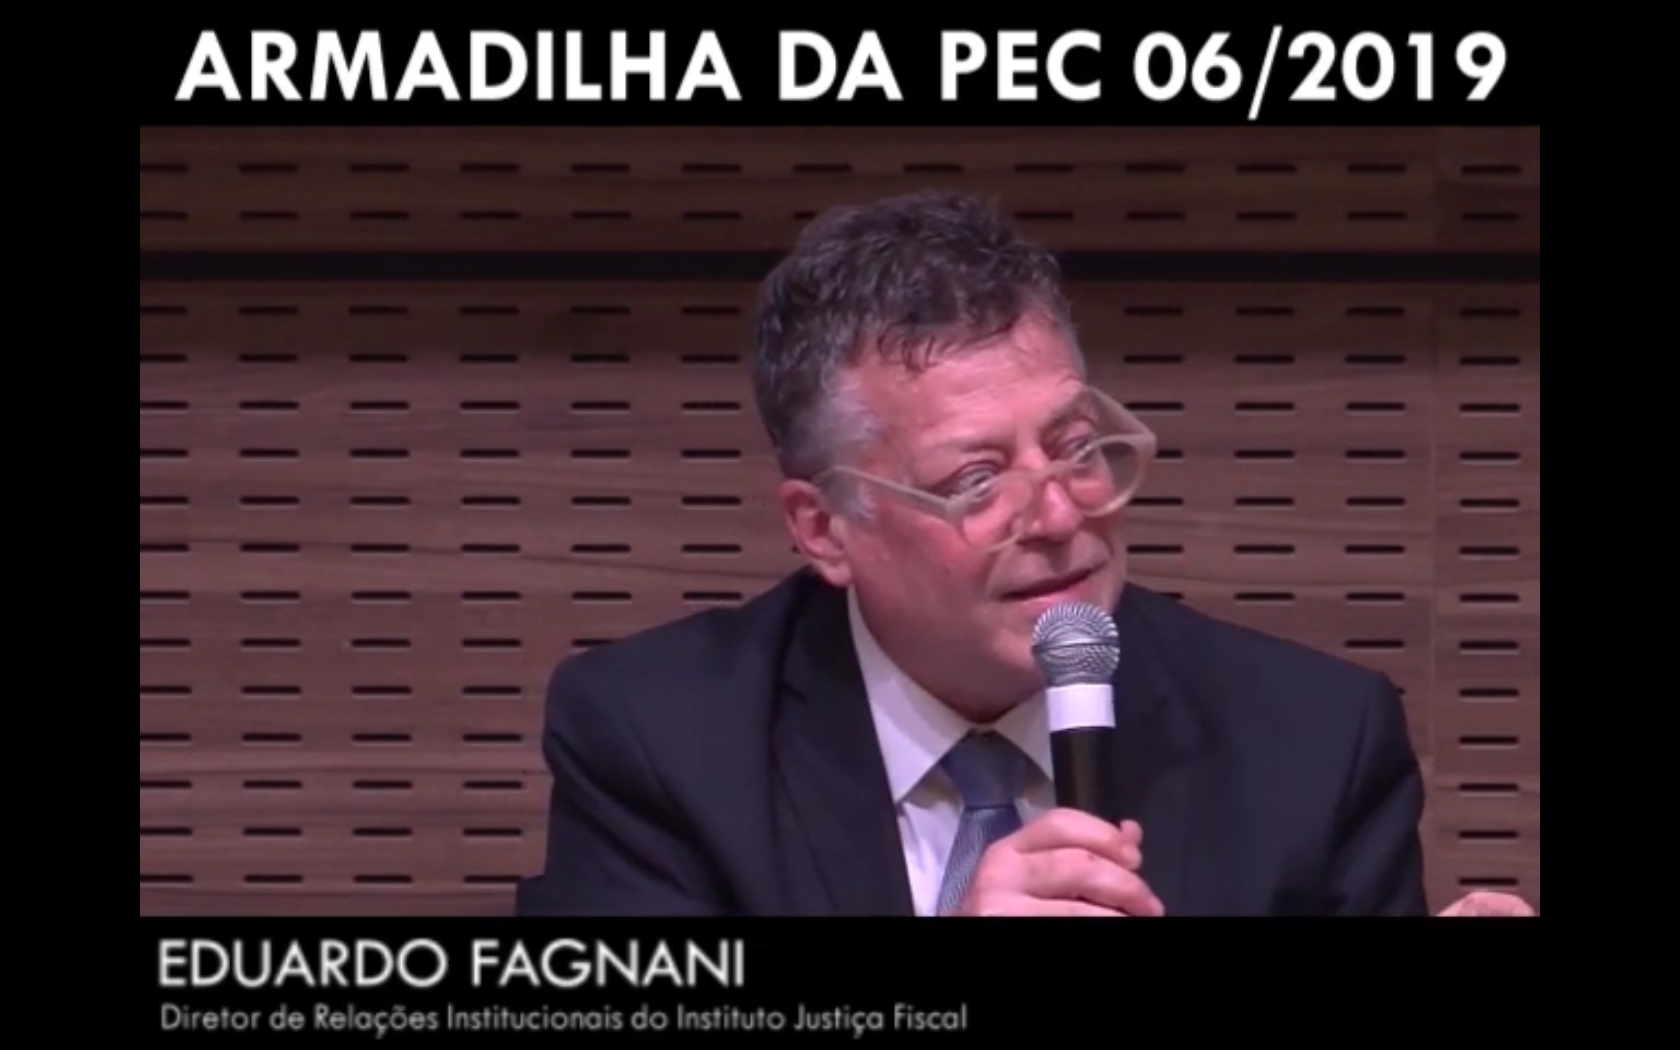 Armadilha da PEC 06/2019 - Eduardo Fagnani